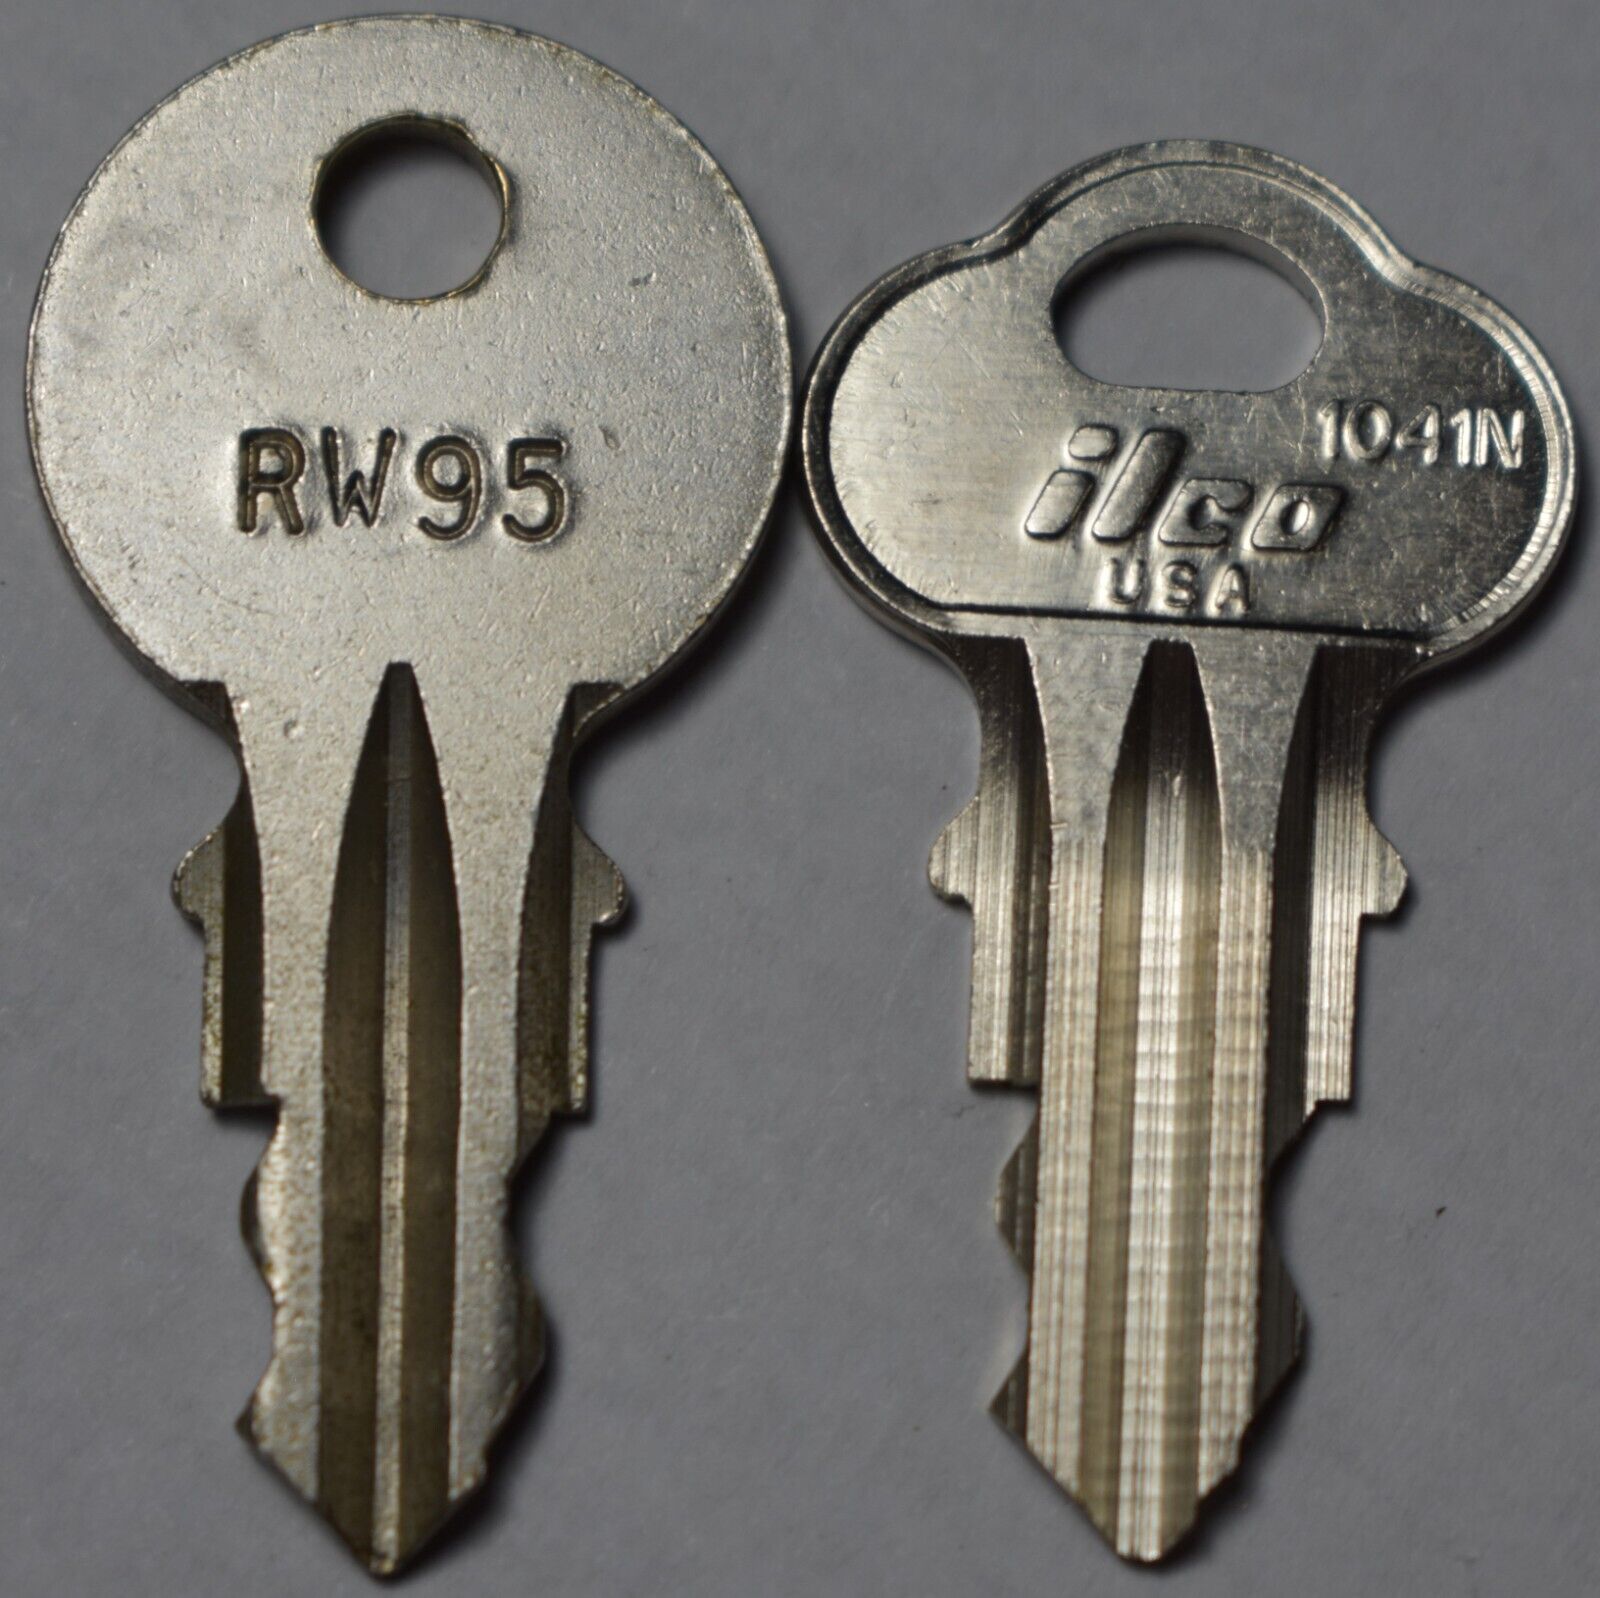 Wurlitzer RW95 Cabinet Key For Models 2500 Thru 3010